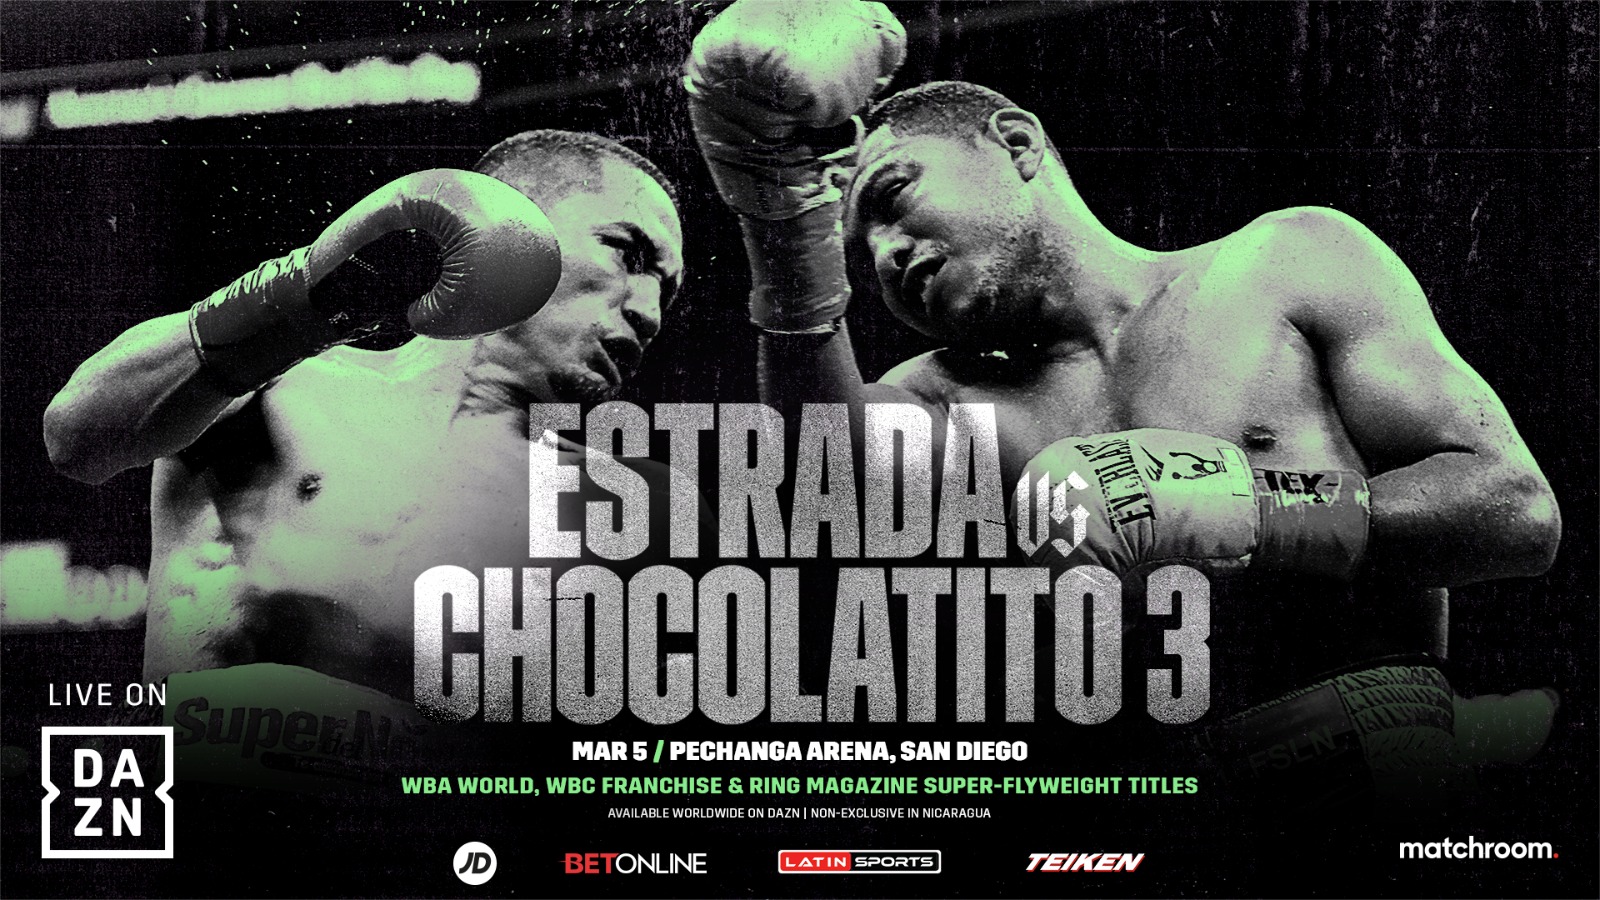 Juan Francisco Estrada, Roman Gonzalez boxing photo and news image